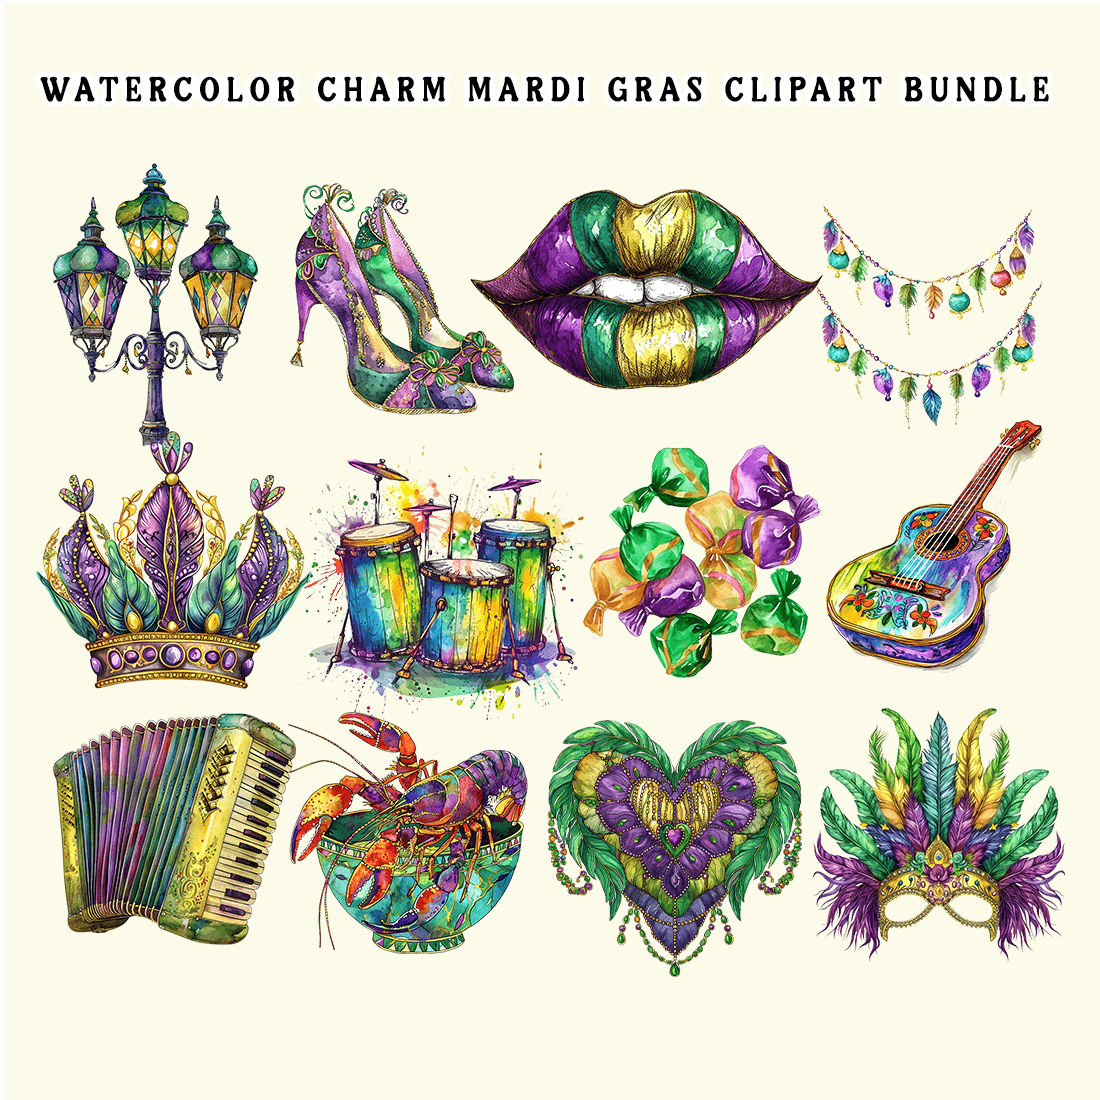 Watercolor Charm Mardi Gras Clipart Bundle preview image.